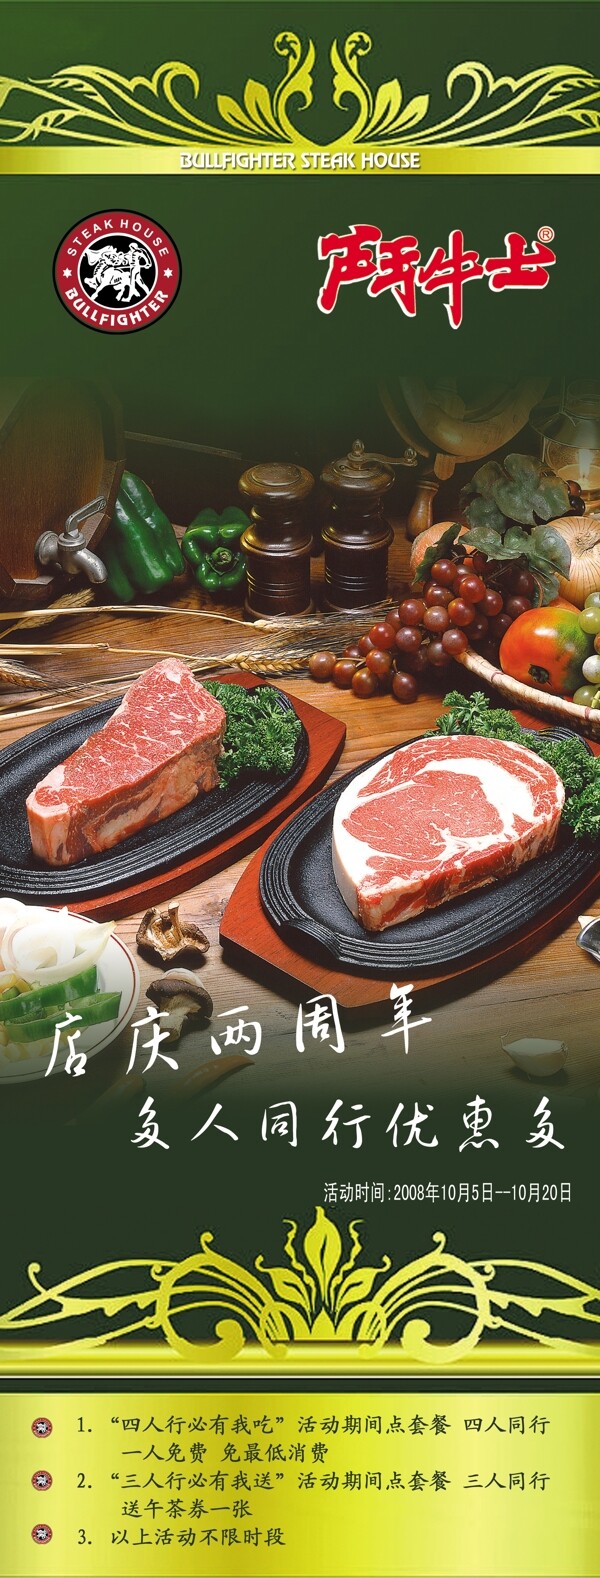 牛肉店美食广告图片